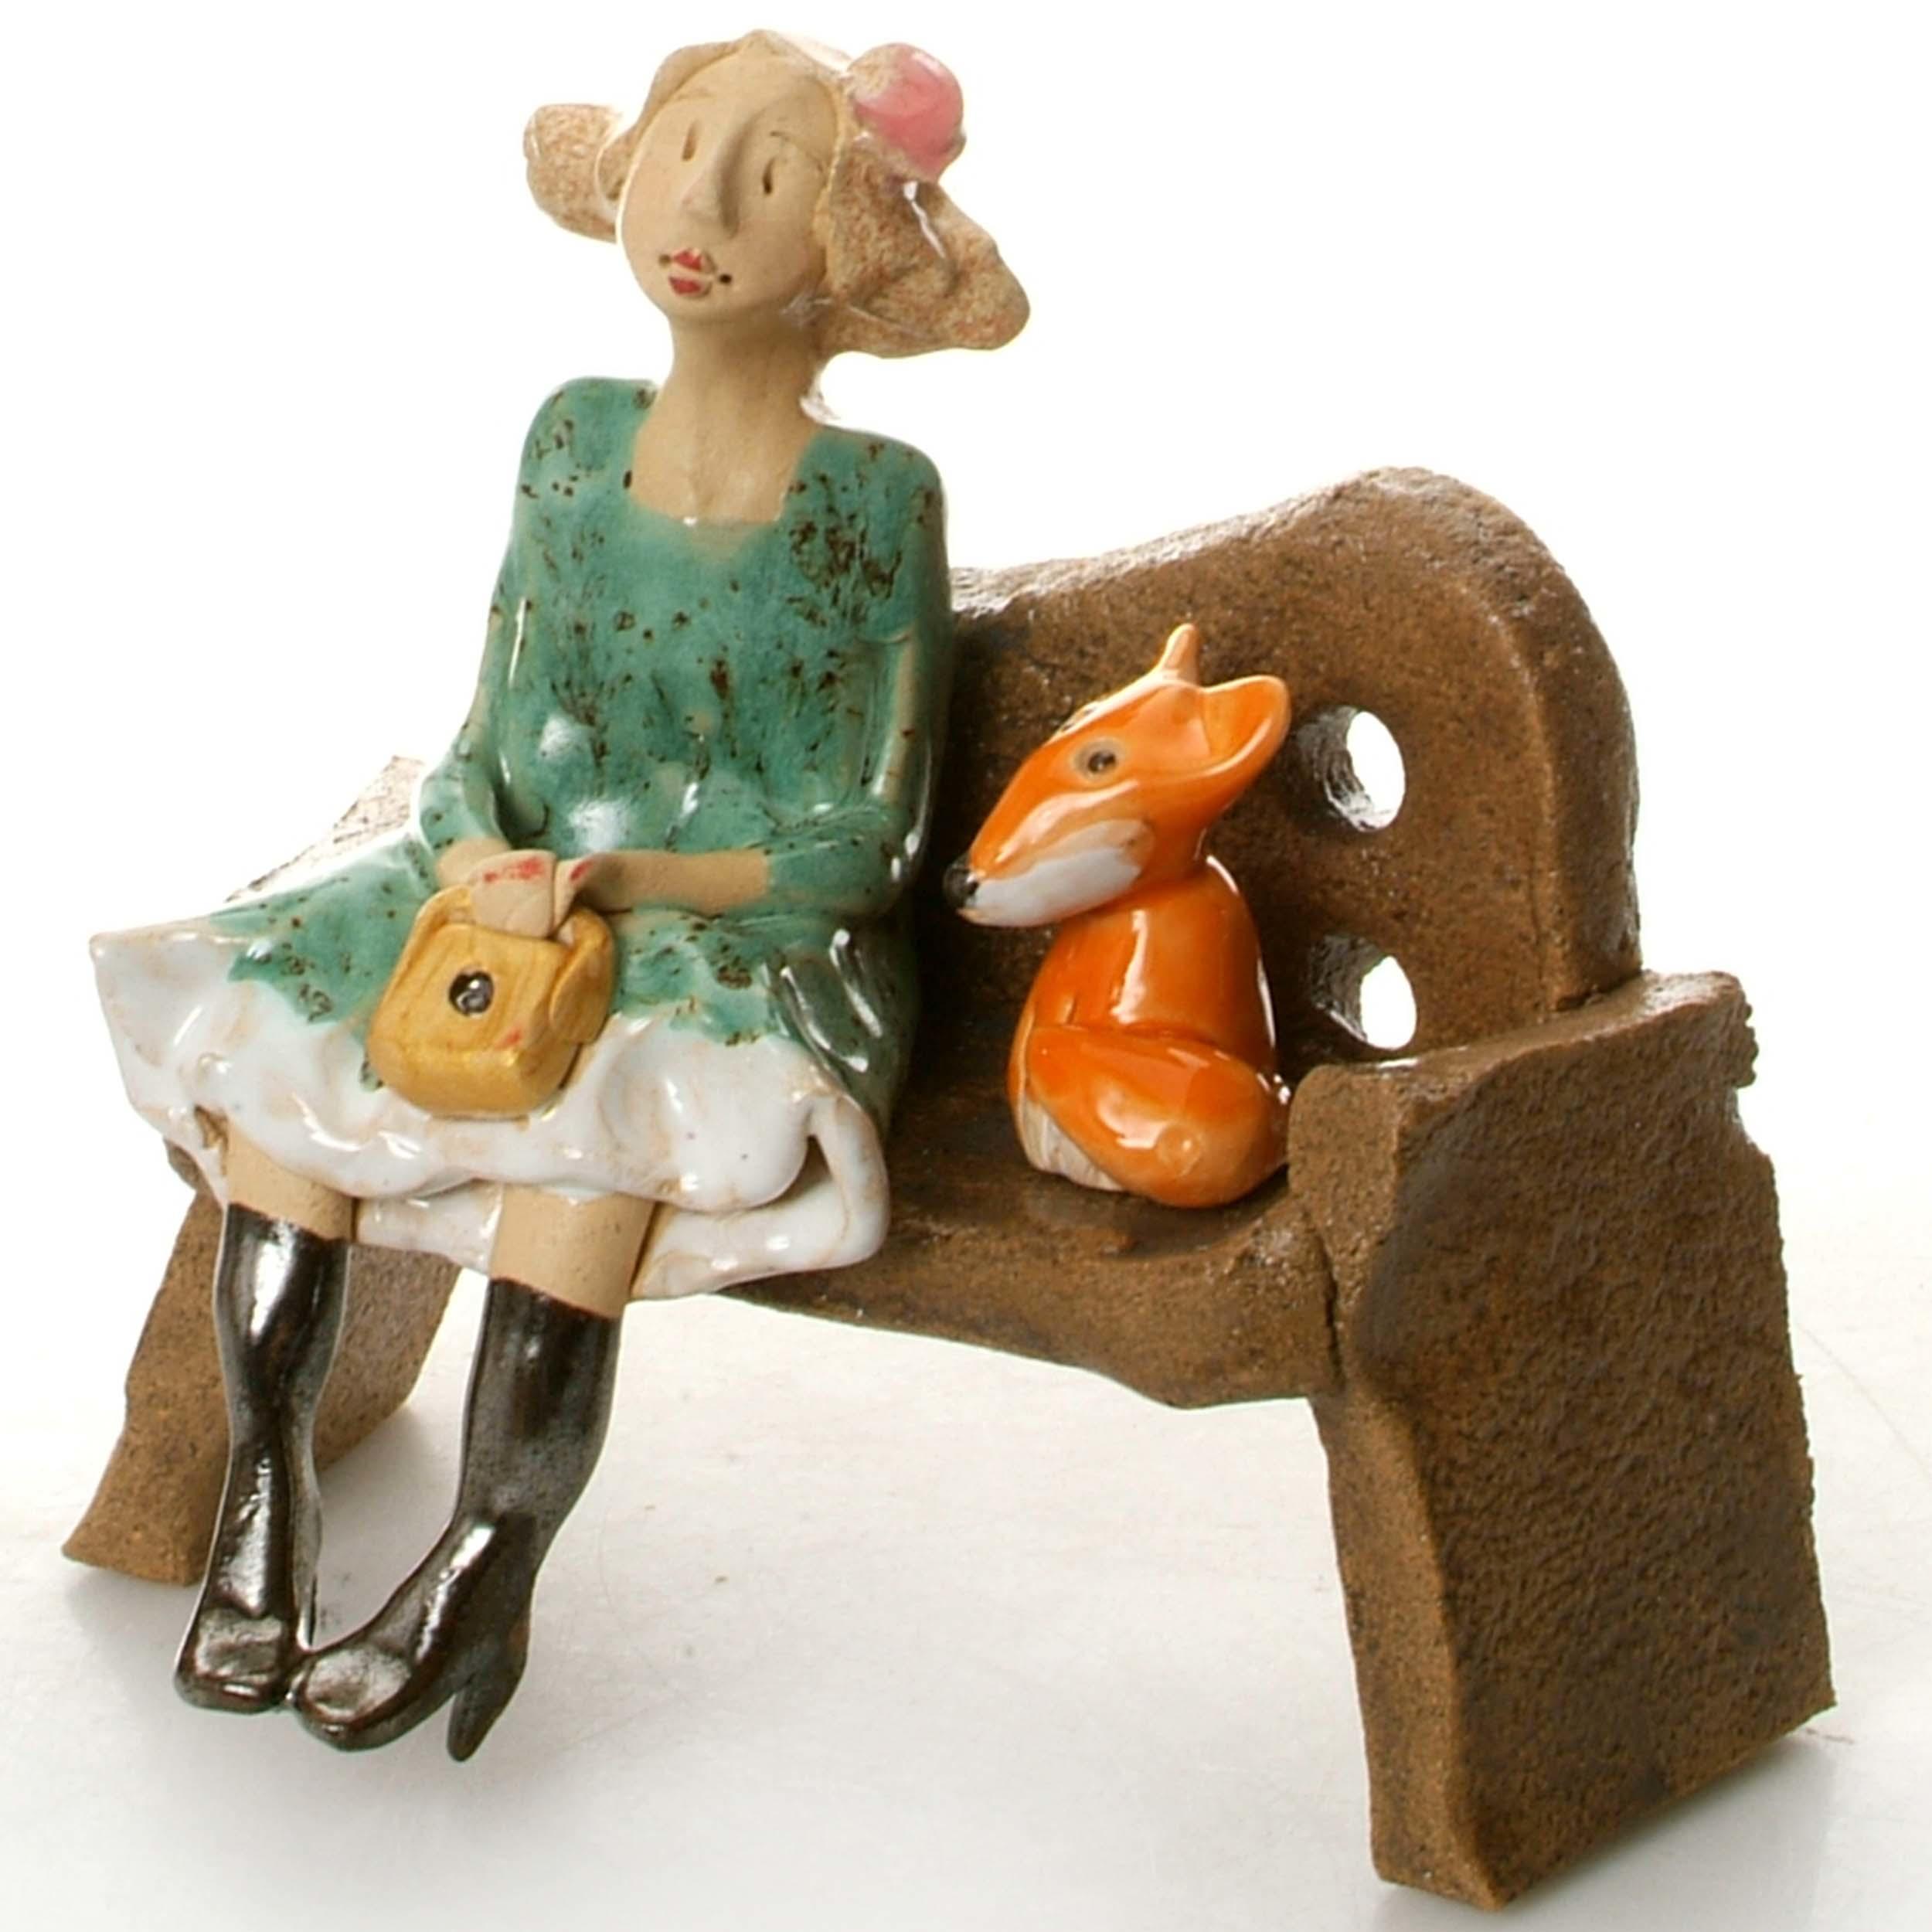 Ceramic Foxy Lady Figurine sitting on Bench with Fox